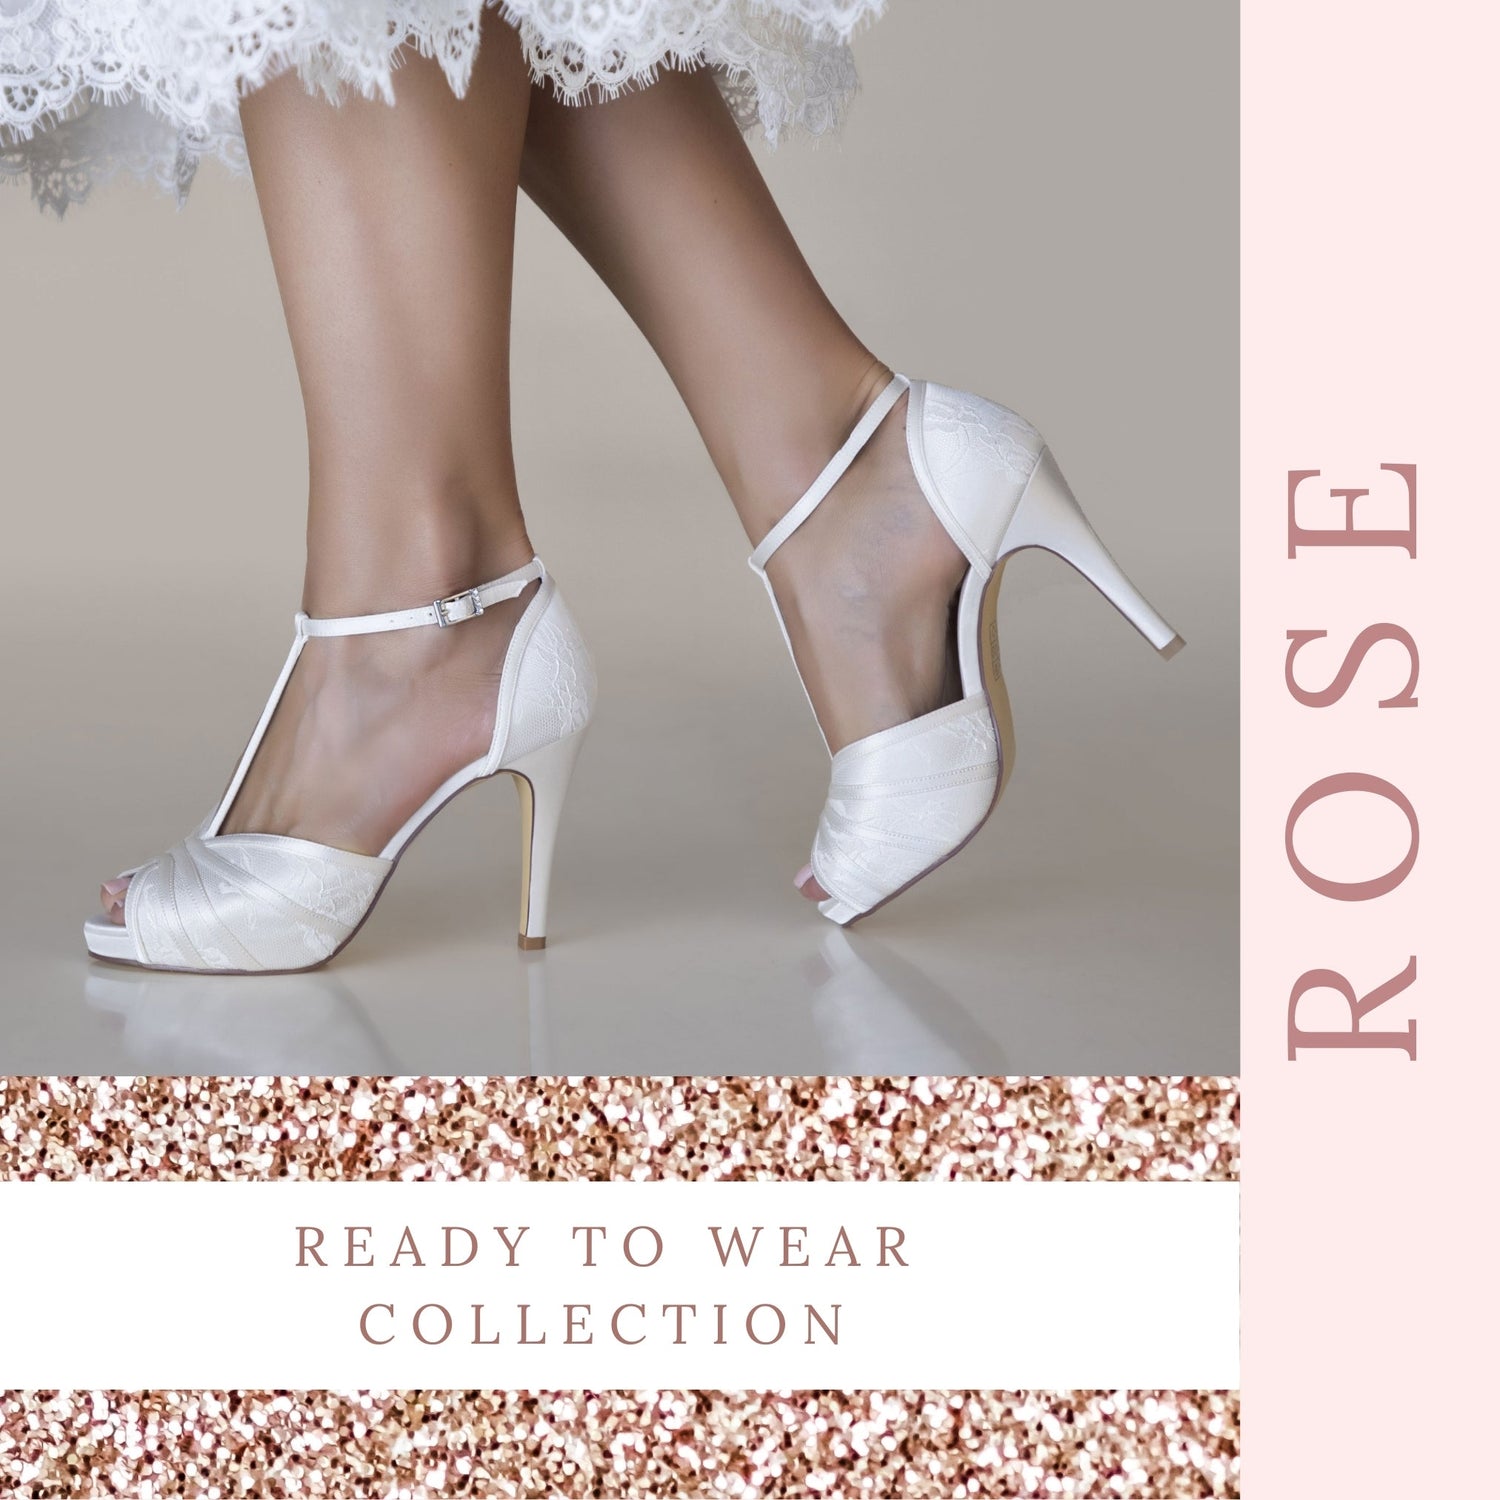 Wedding Shoes 4inch Heels Ivory, Ivory Platform Heels With Pearls, Wedding  Shoes Ivory, Crepe Luxe High Heel Stilettos - Etsy